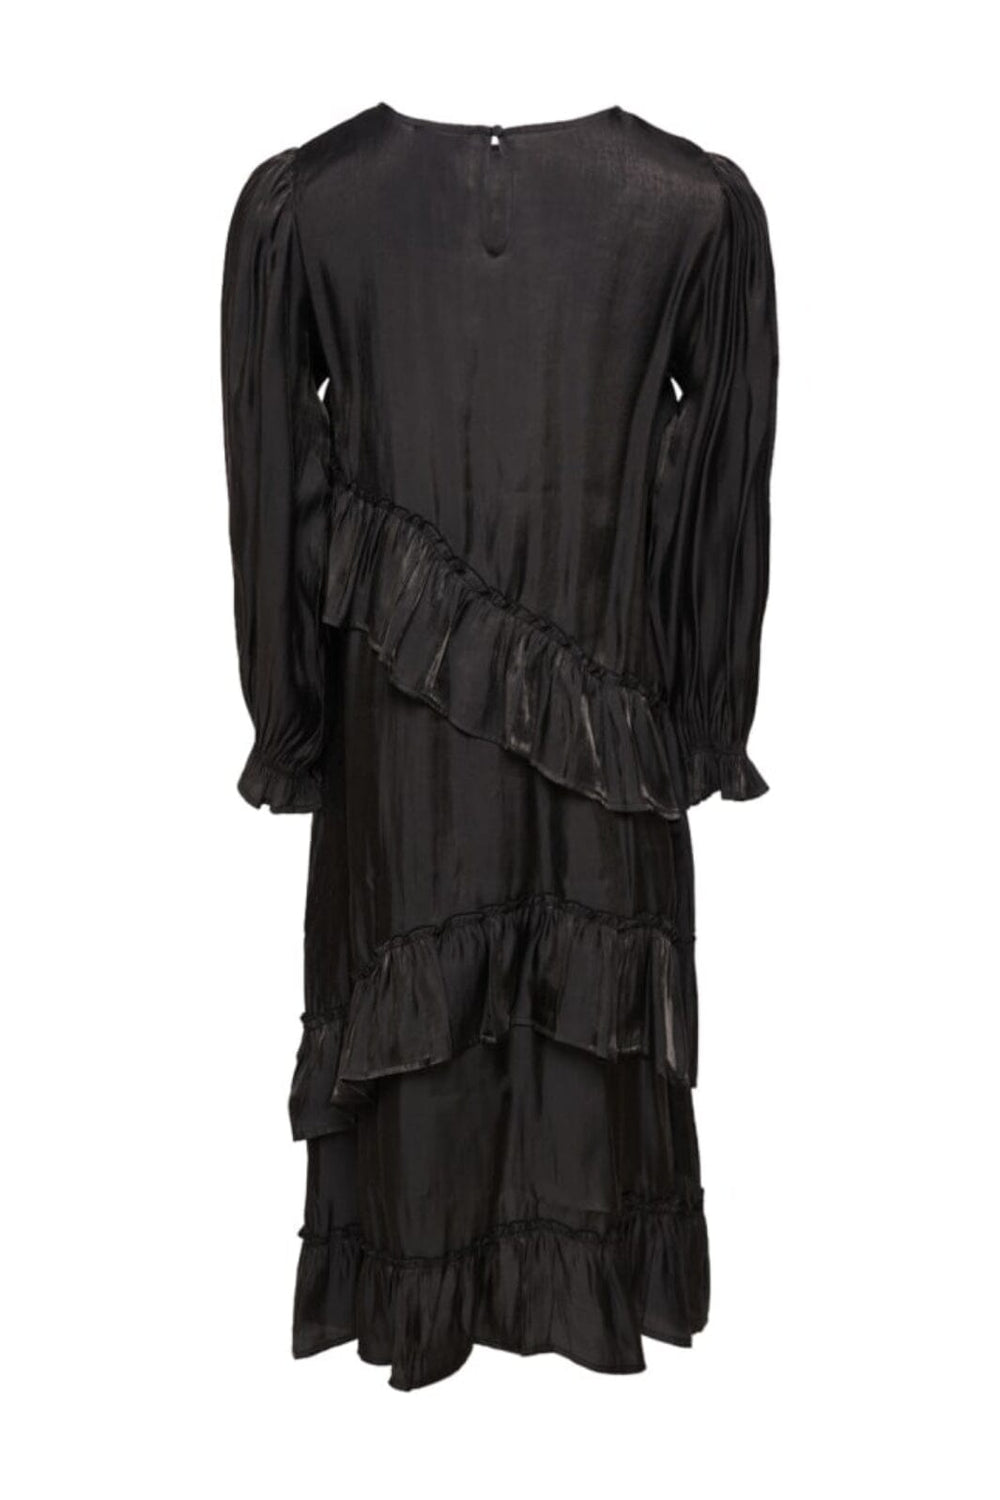 Noella - Sierra Frill Dress - 004 Black Kjoler 